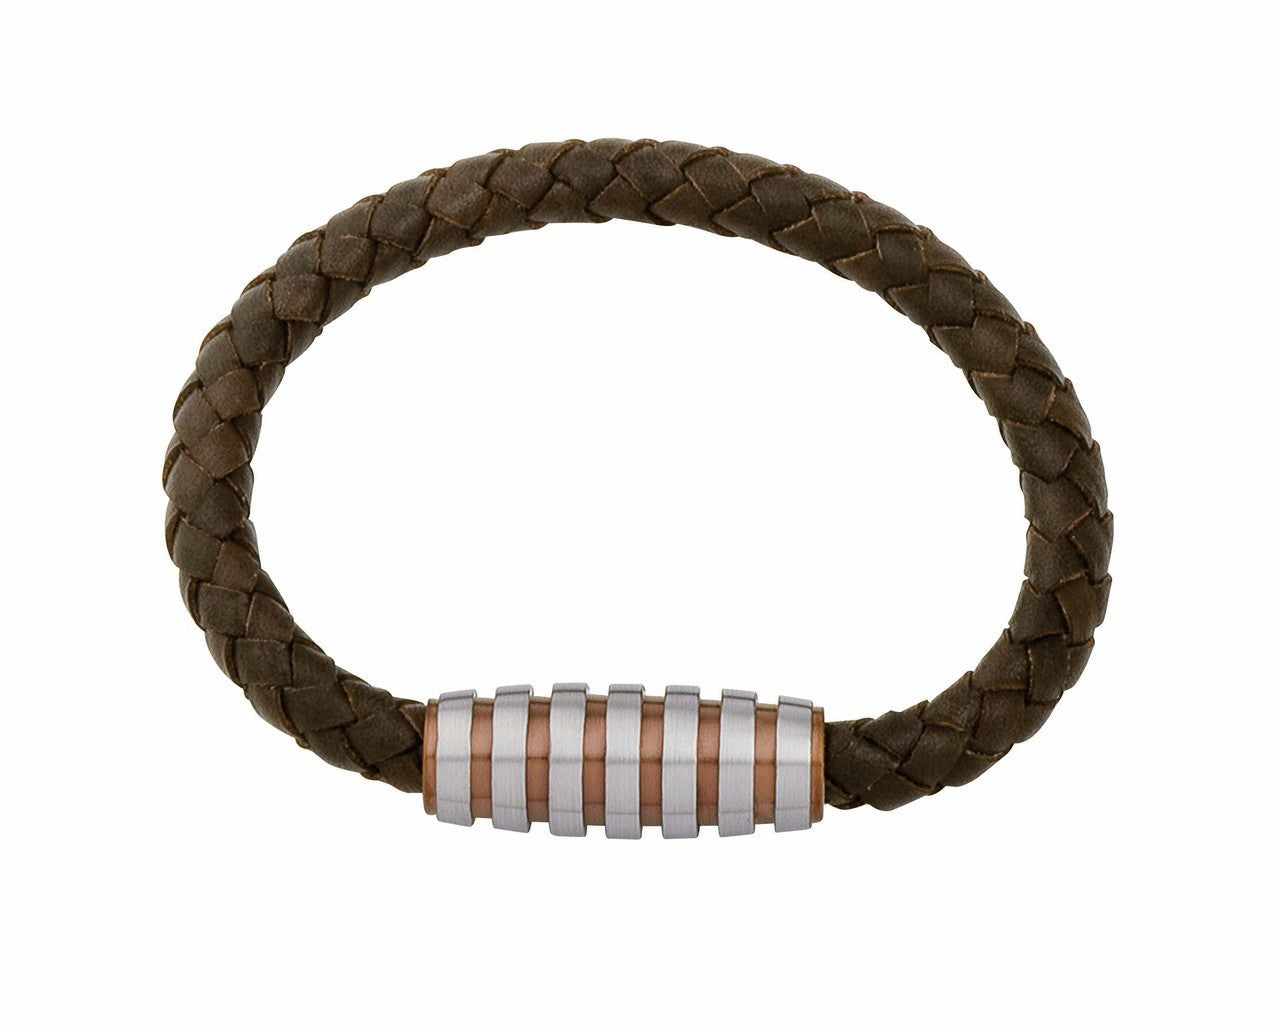 INB08 leather and steel adjustable bracelet